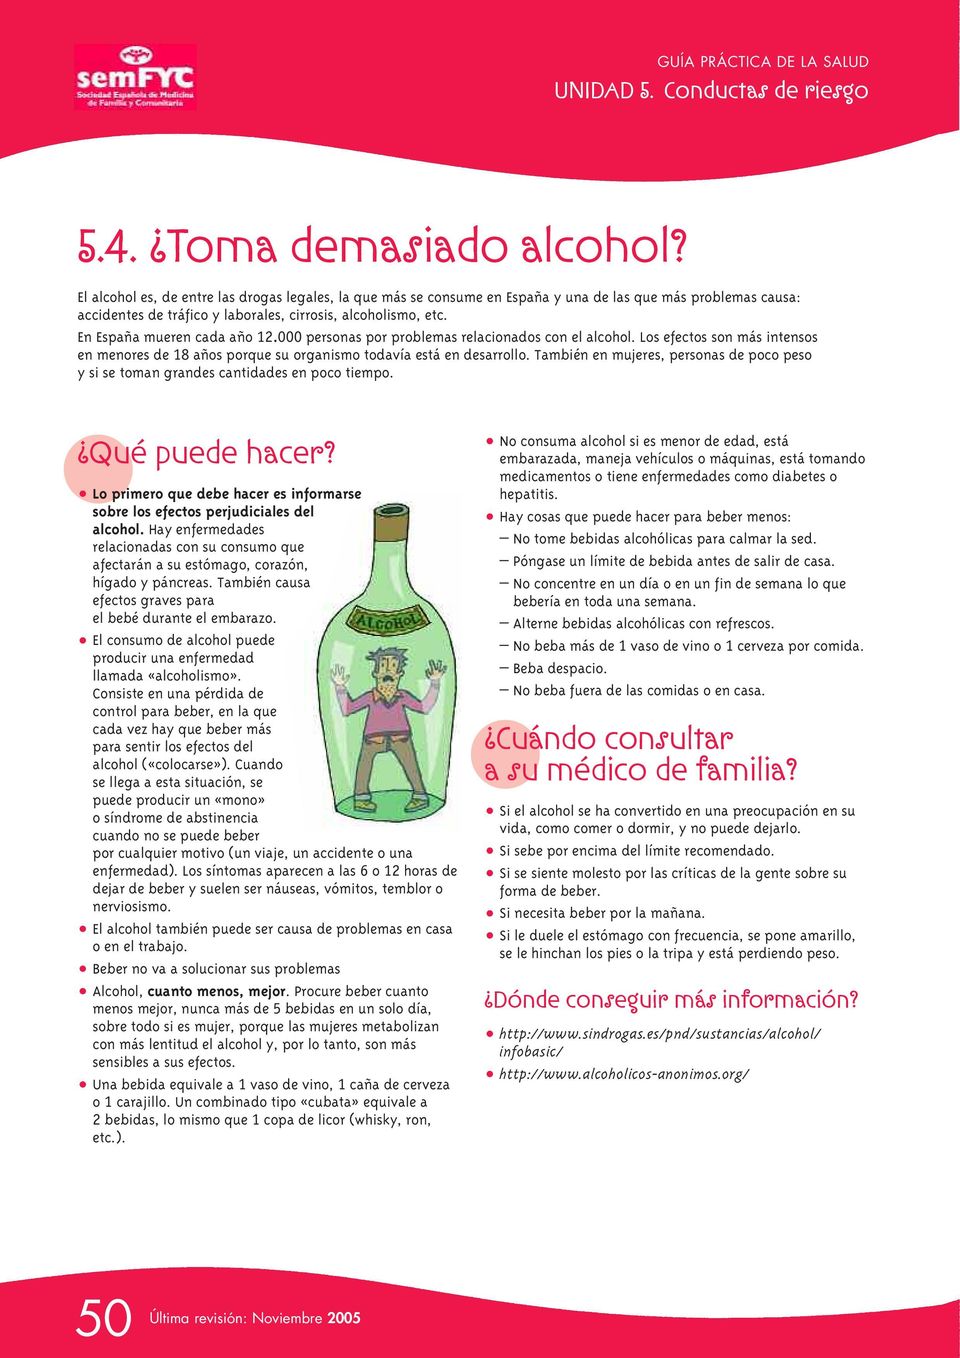 En España mueren cada año 12.000 personas por problemas relacionados con el alcohol. Los efectos son más intensos en menores de 18 años porque su organismo todavía está en desarrollo.